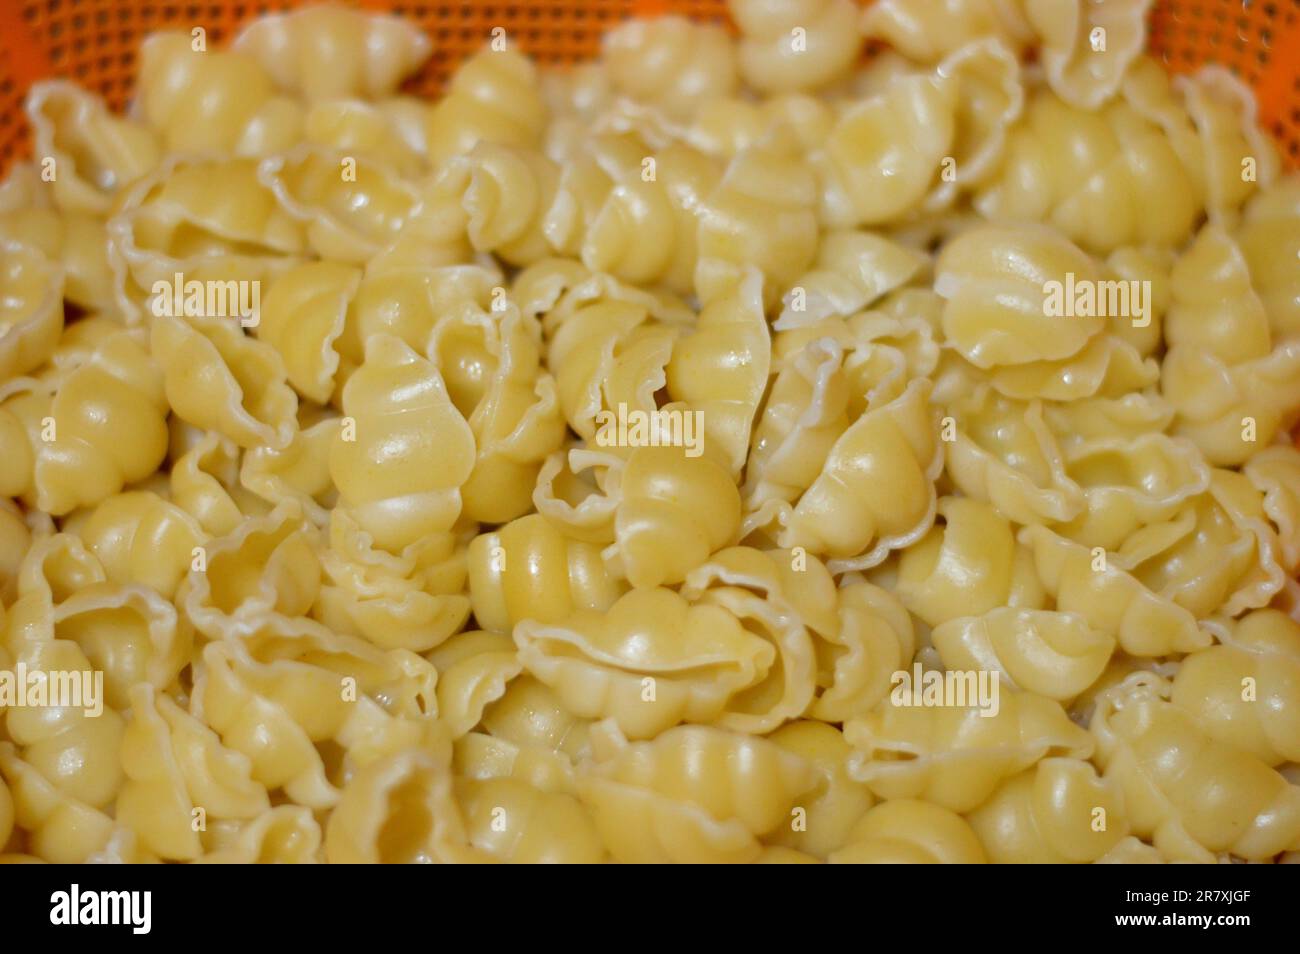 Macaroni bolliti, pasta bollita a forma di lumache, a base di grano duro, focus selettivo di pasta pronta per essere cotta in ricette italiane o altre ricette Foto Stock